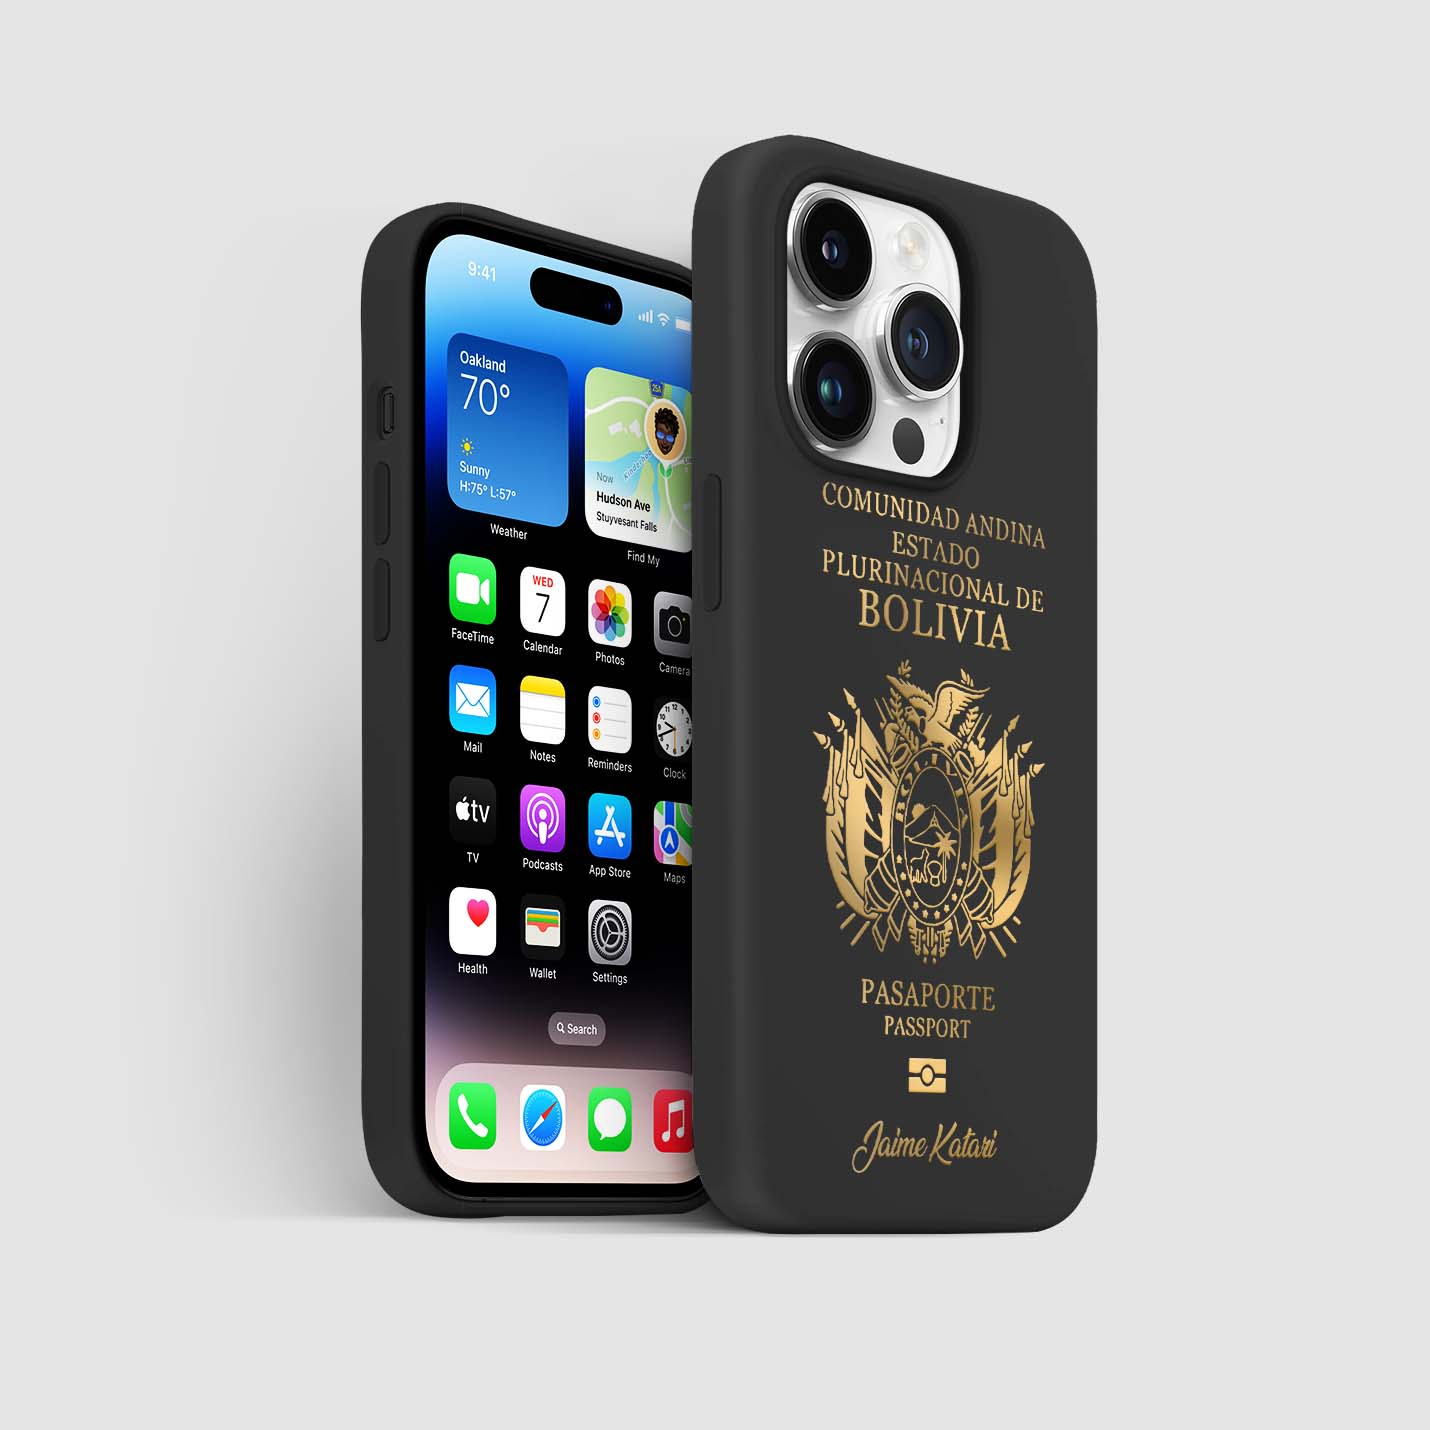 Handyhüllen mit Reisepass - Bolivien - 1instaphone